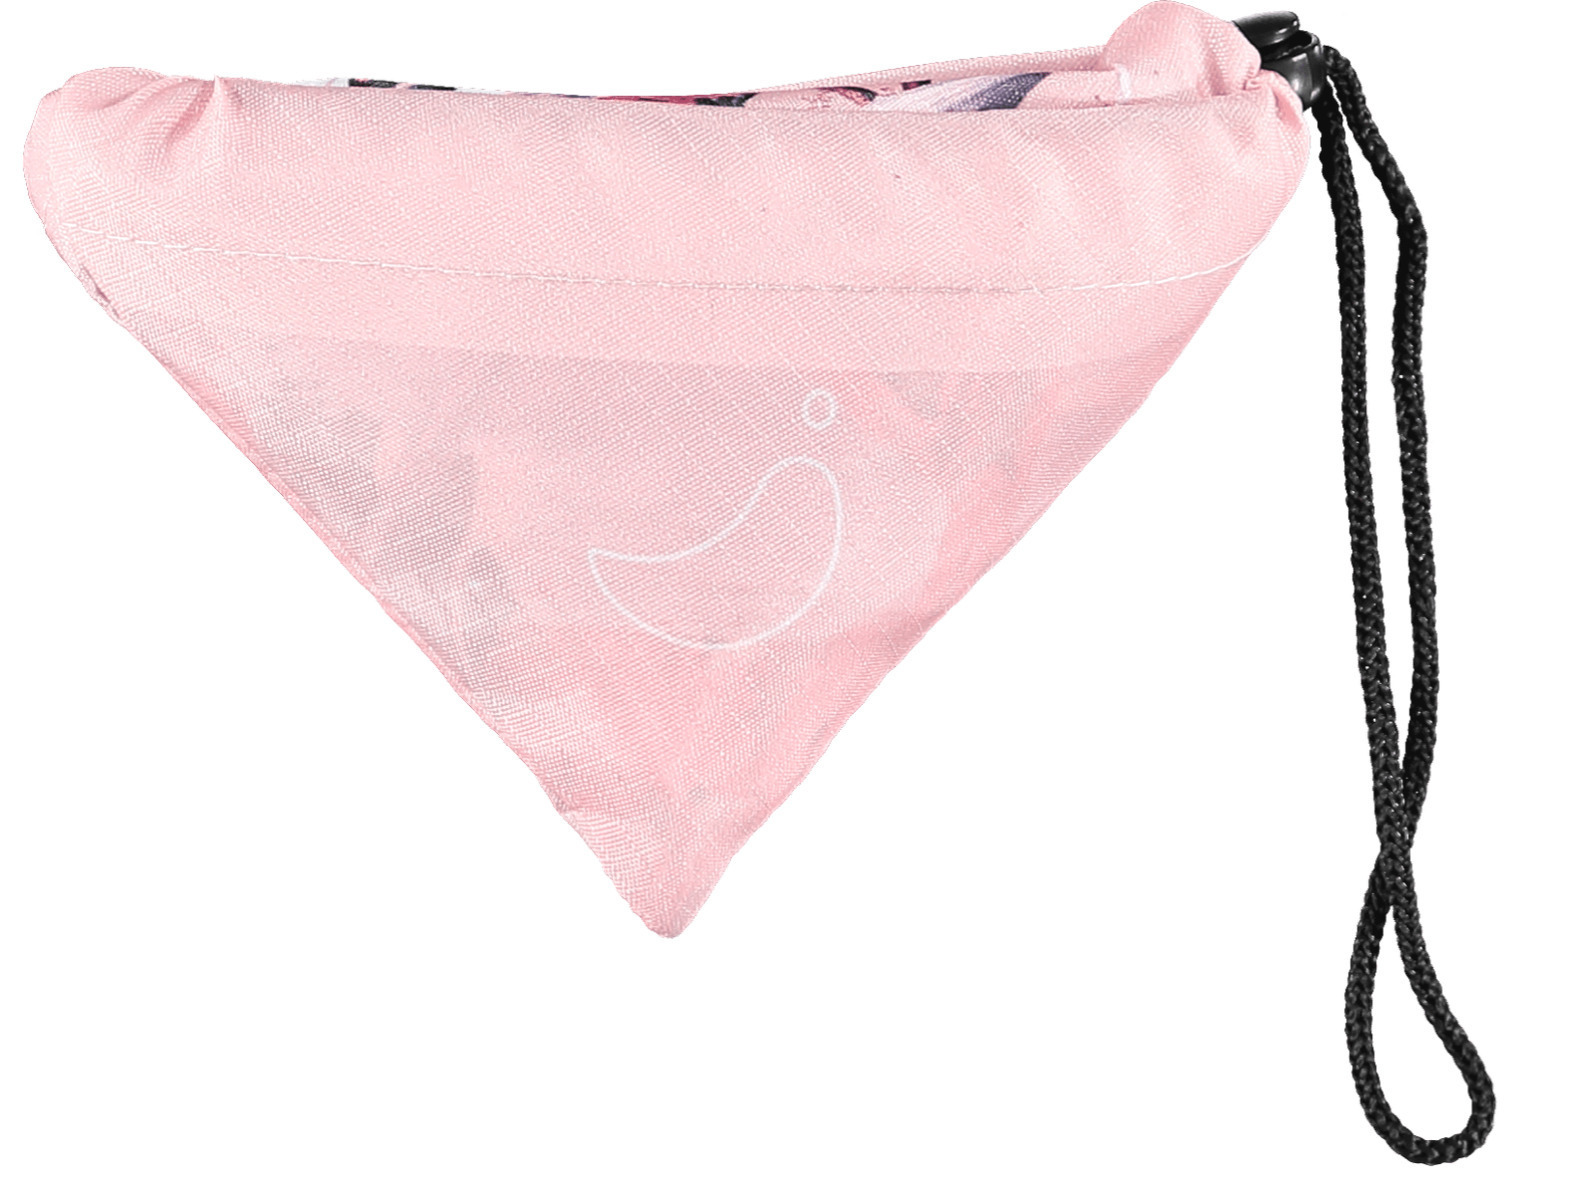 Chilly's Υφασμάτινη Τσάντα για Ψώνια σε Ροζ χρώμα